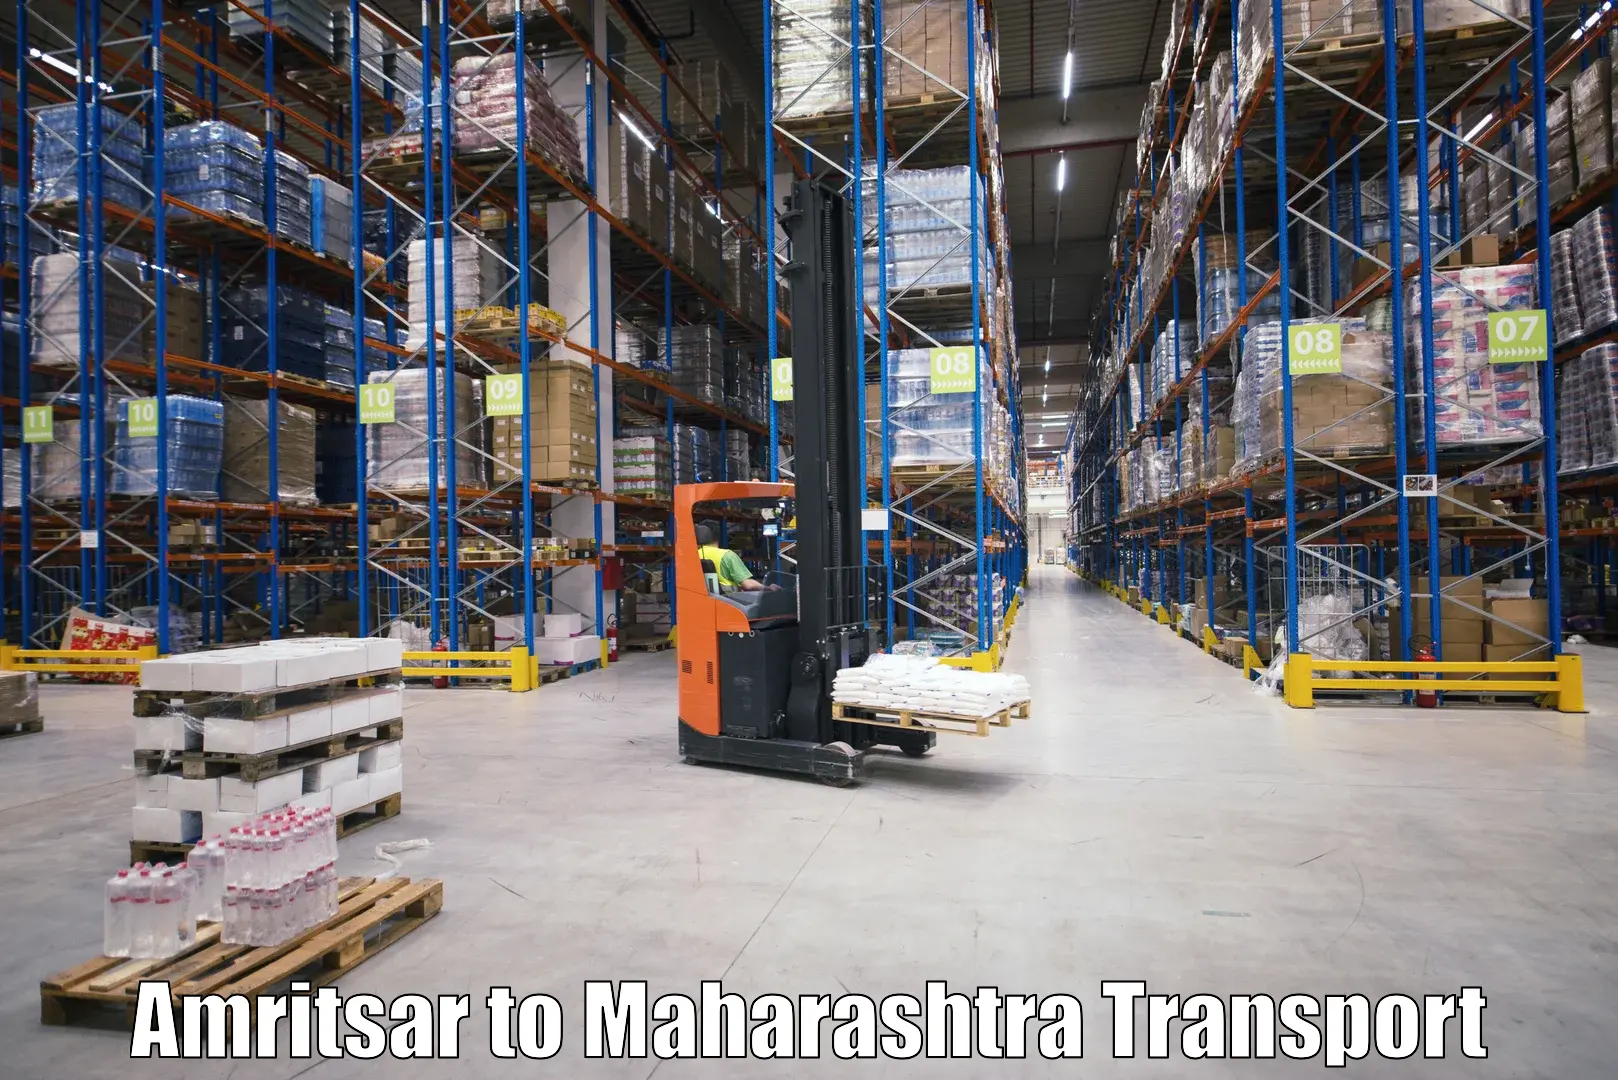 Online transport service Amritsar to Waranga Phata